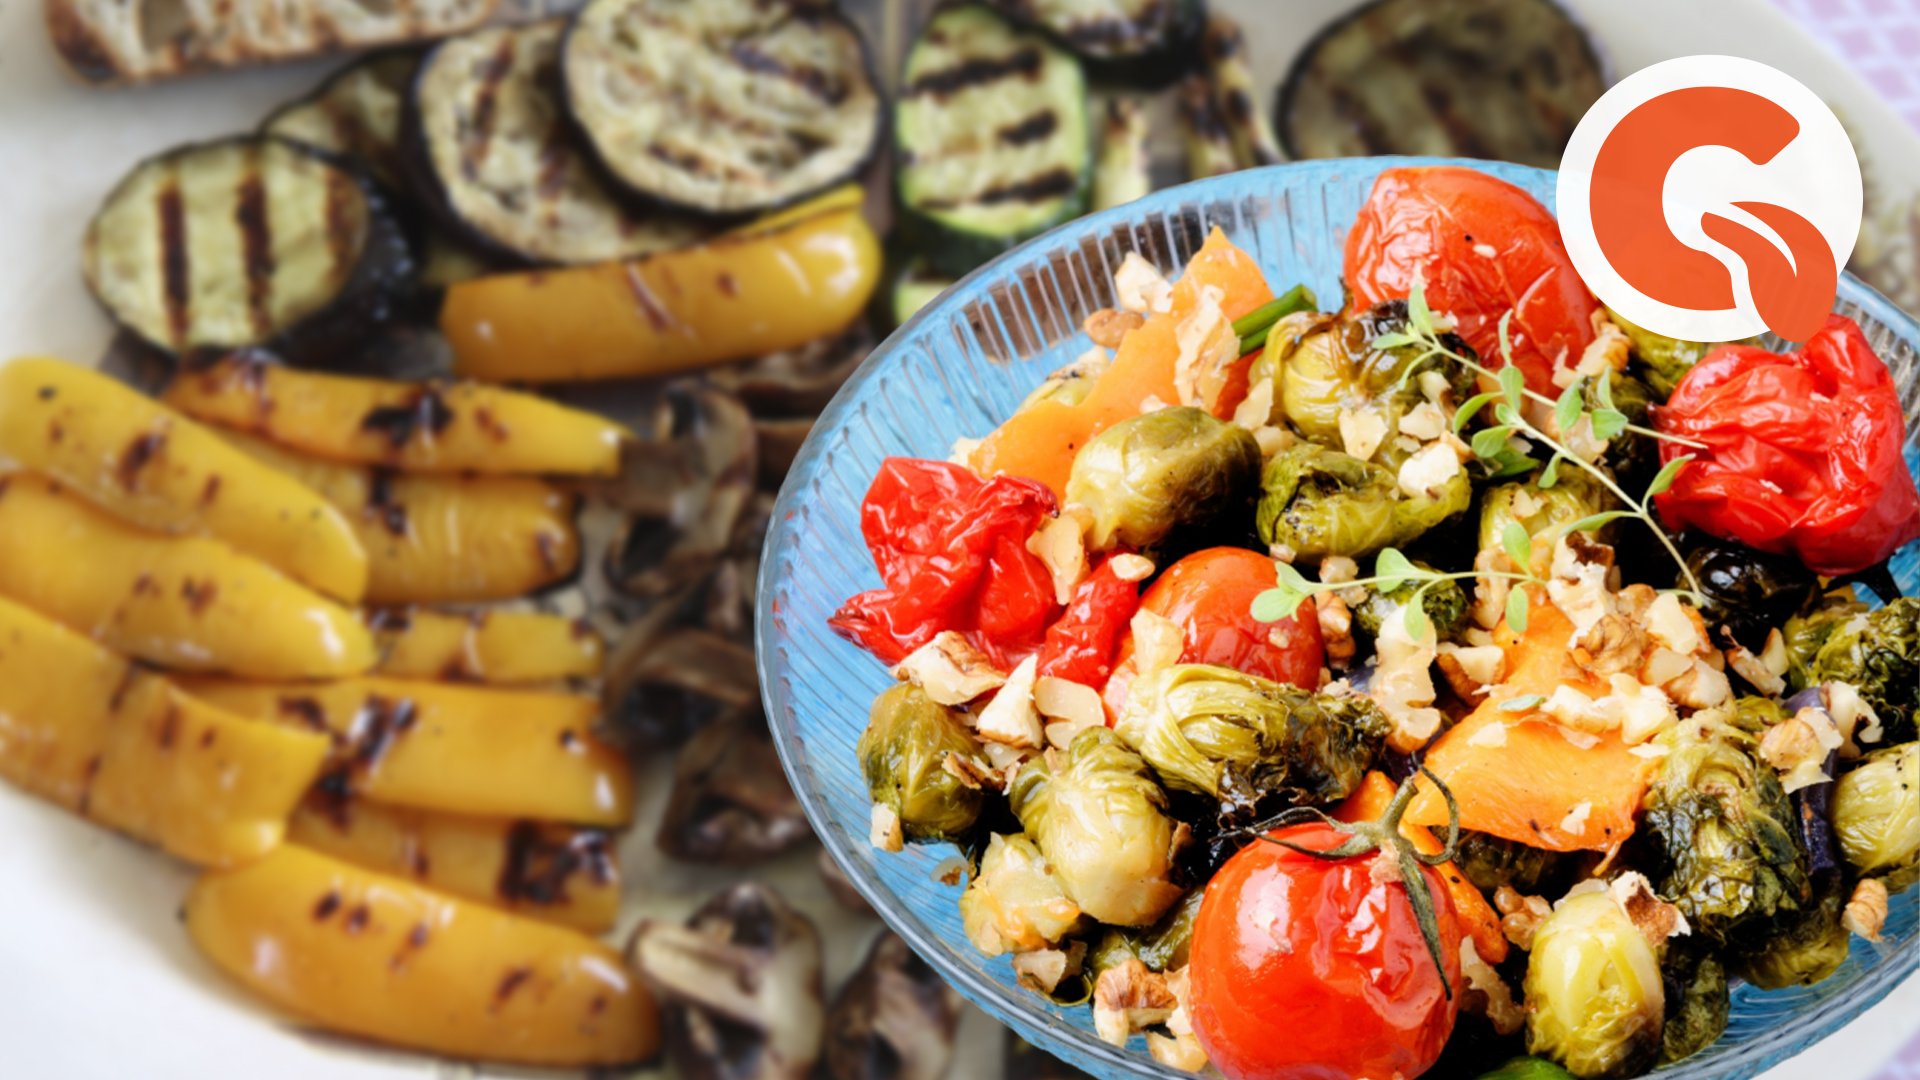 Армянский салат из овощей 4 буквы. Овощи гриль на столе. Салаты армянской кухни. Салат из овощей на гриле. Армянский салат из печеных овощей.